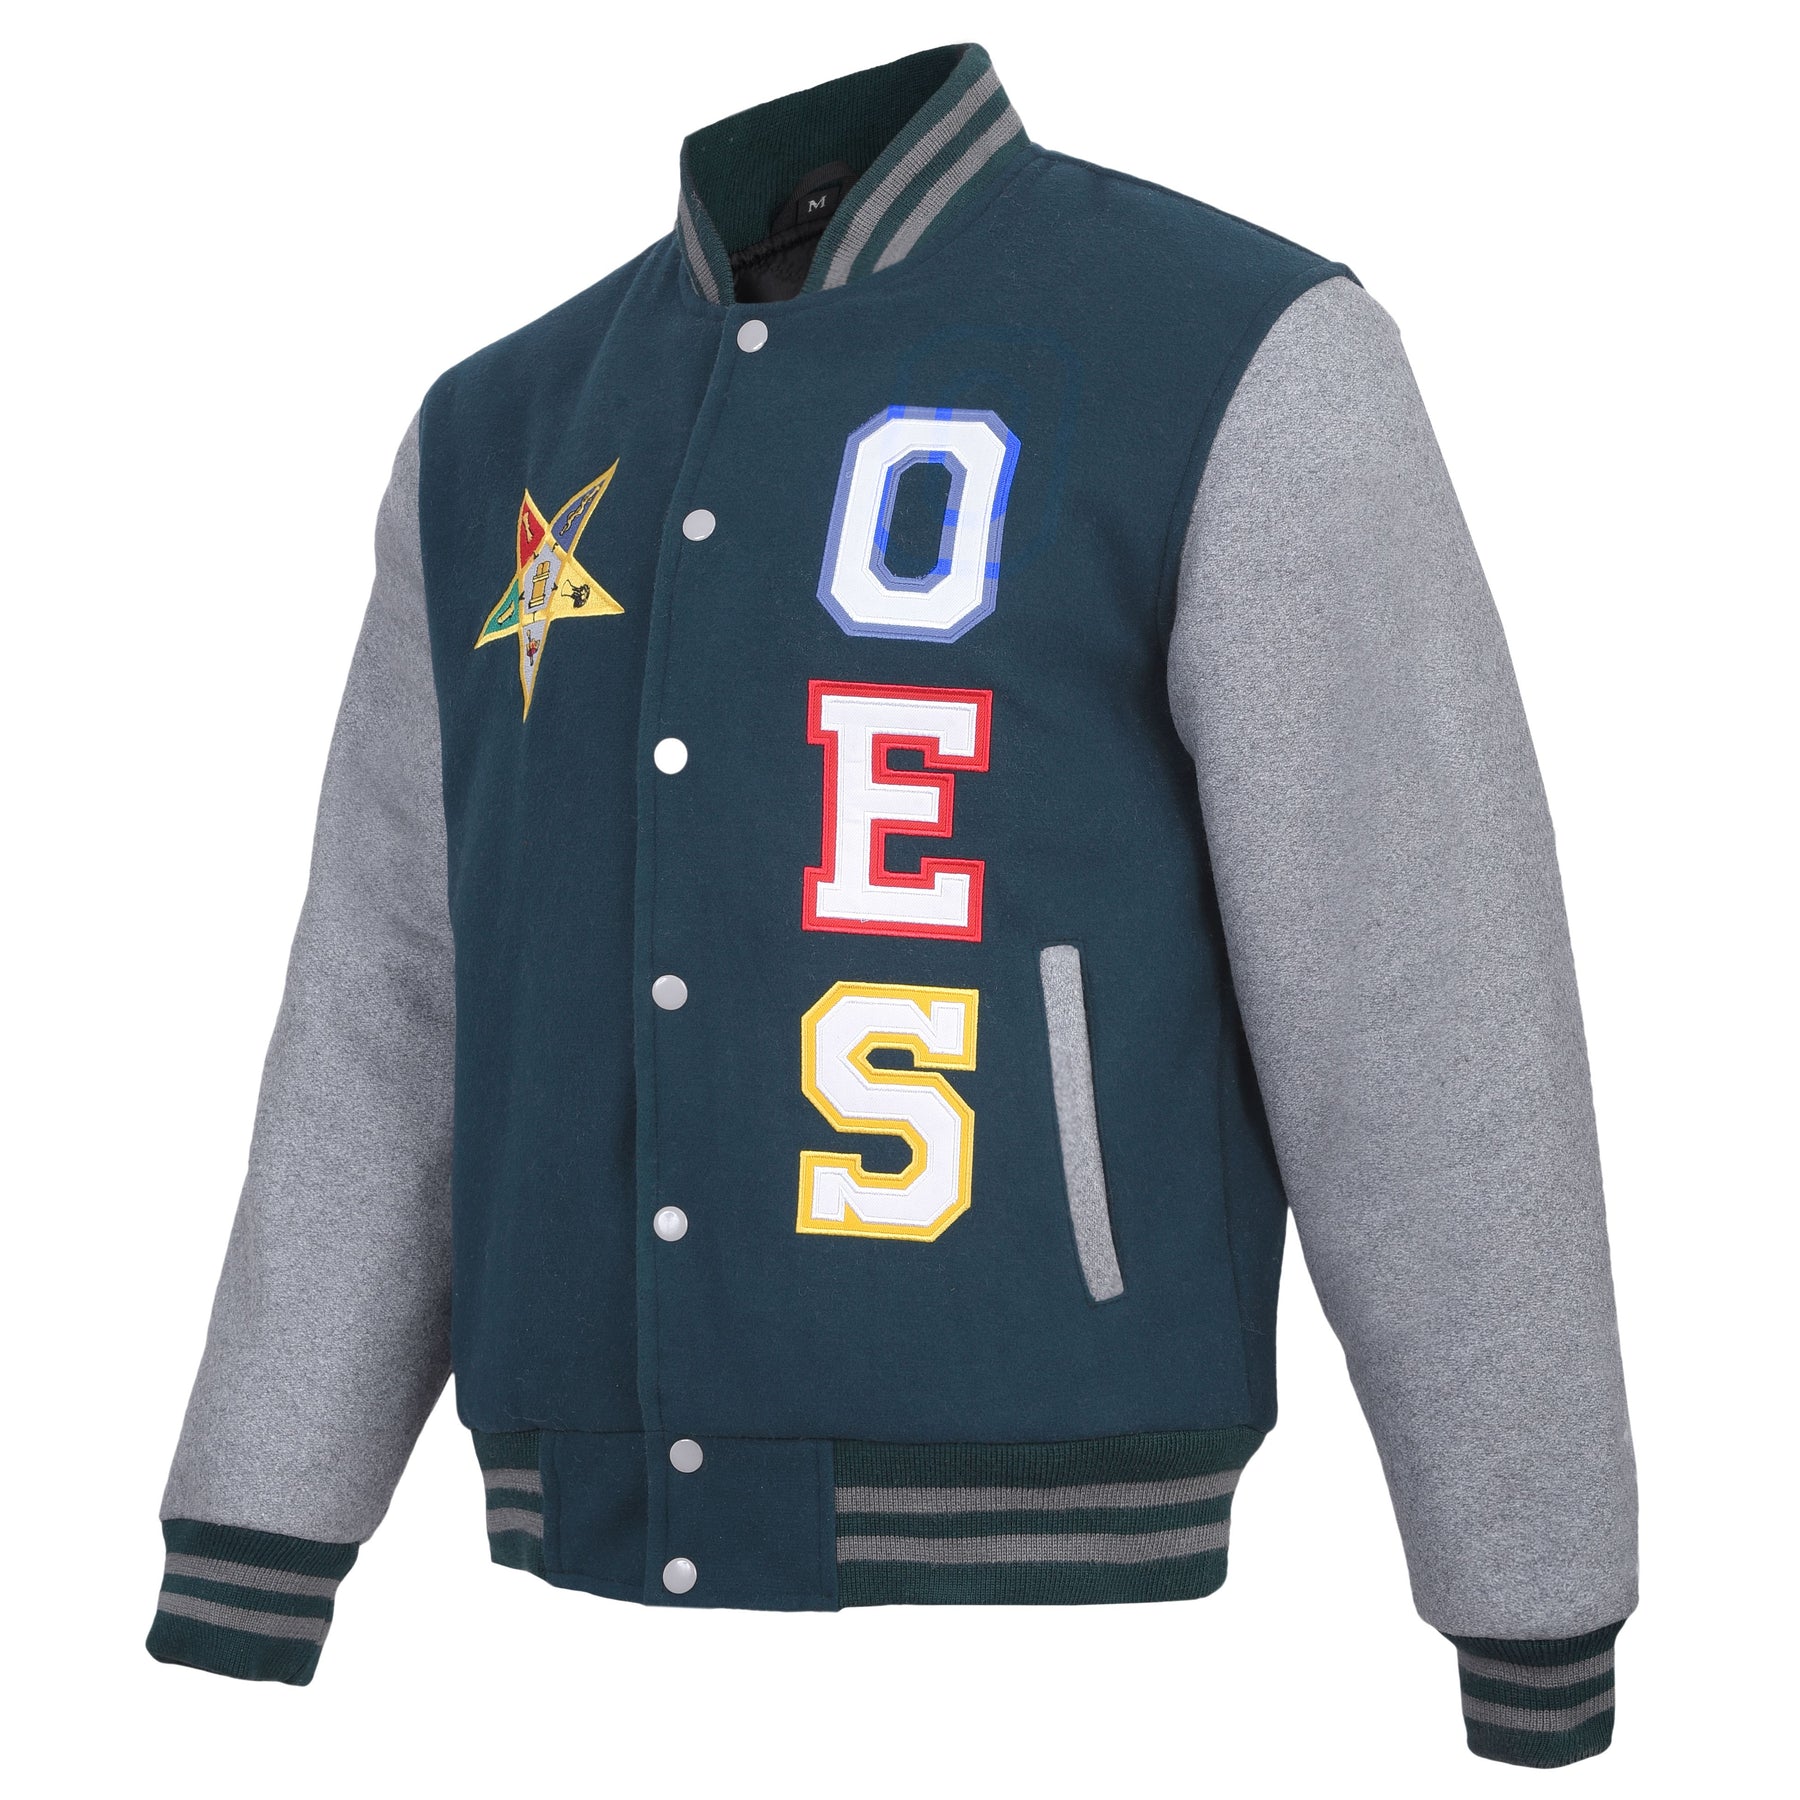 OES Jacket - Dark Blue & Gray - Bricks Masons